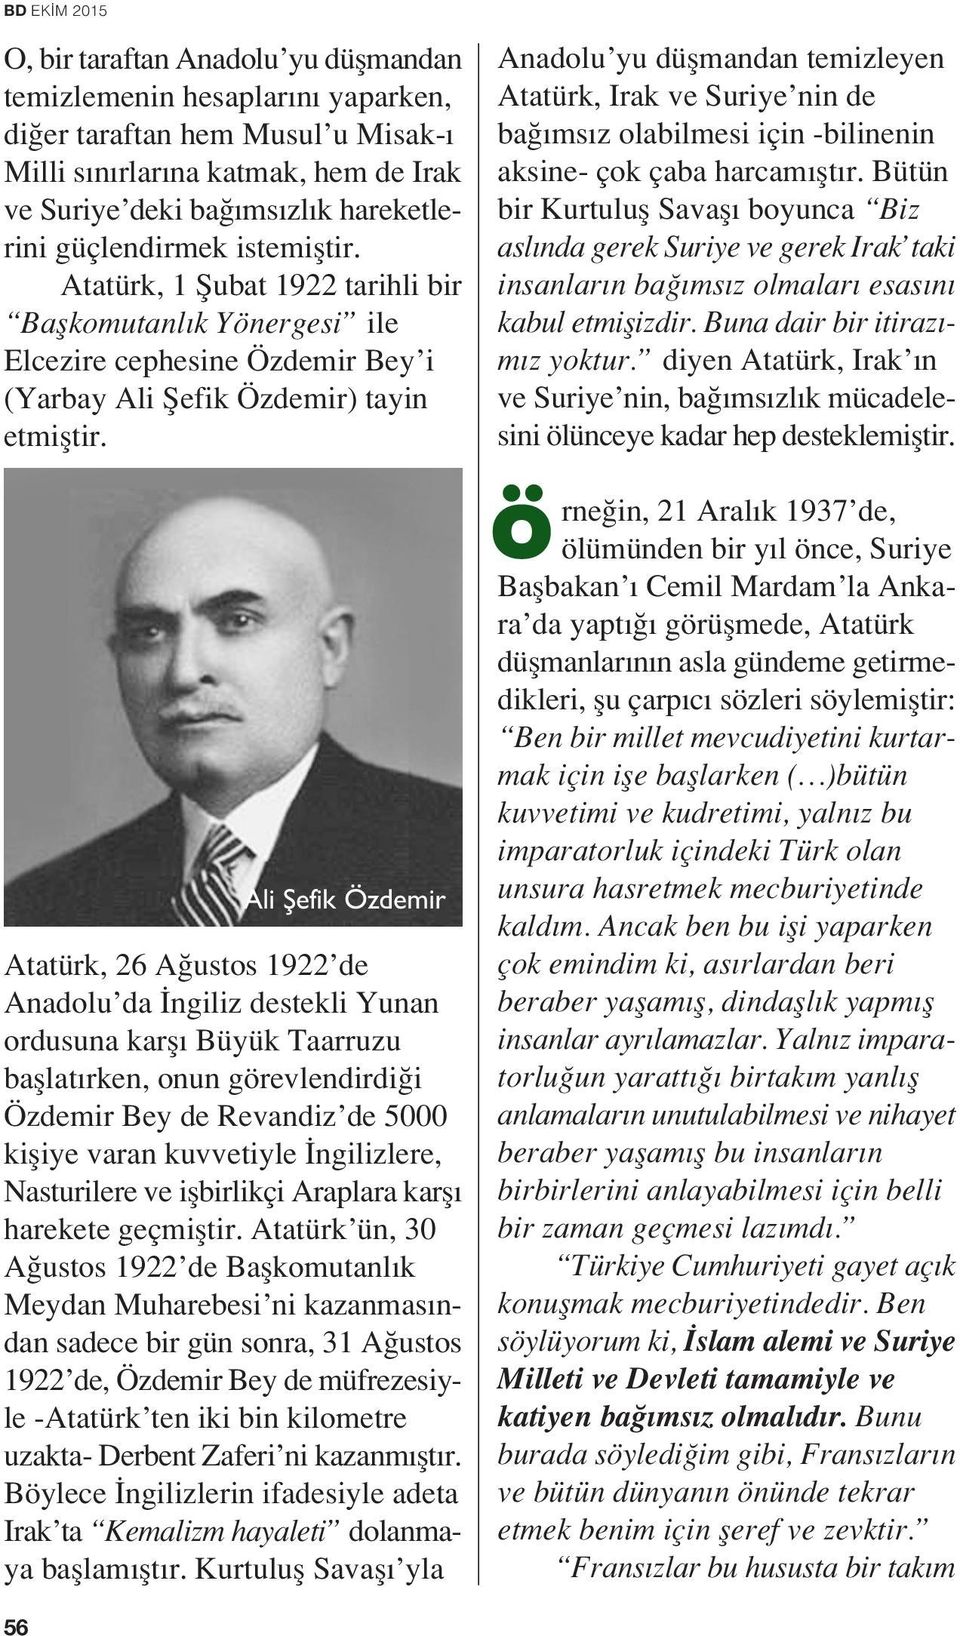 Ali fiefik Özdemir Atatürk, 26 A ustos 1922 de Anadolu da ngiliz destekli Yunan ordusuna karfl Büyük Taarruzu bafllat rken, onun görevlendirdi i Özdemir Bey de Revandiz de 5000 kifliye varan